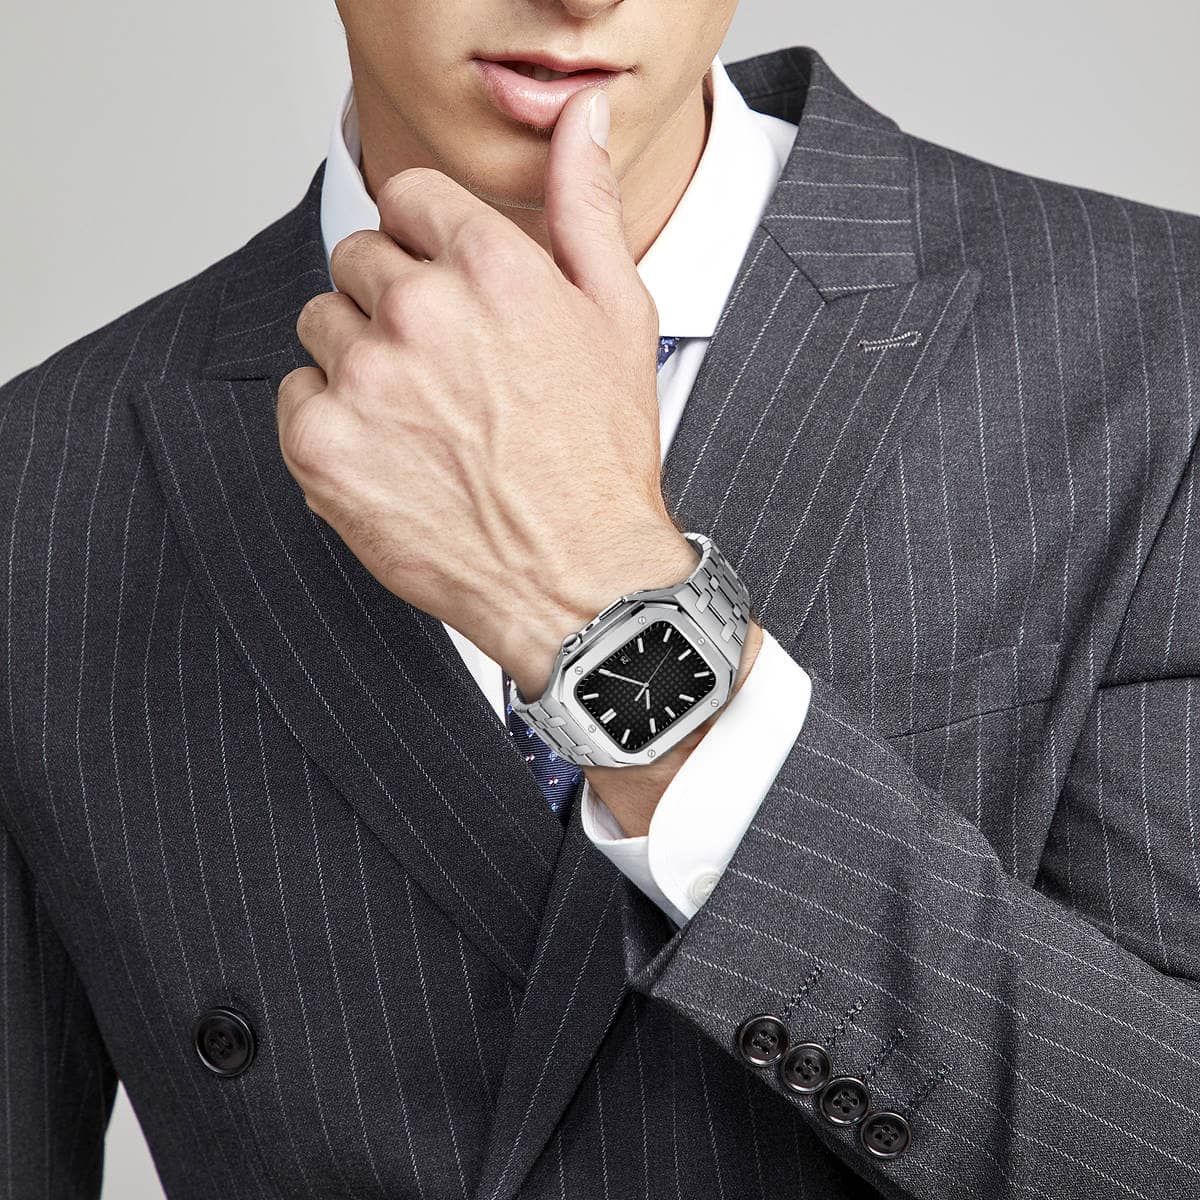 Bracelet de luxe pour Apple Watch haut de gamme silver - Présentation avec une tenue professionnelle costard class